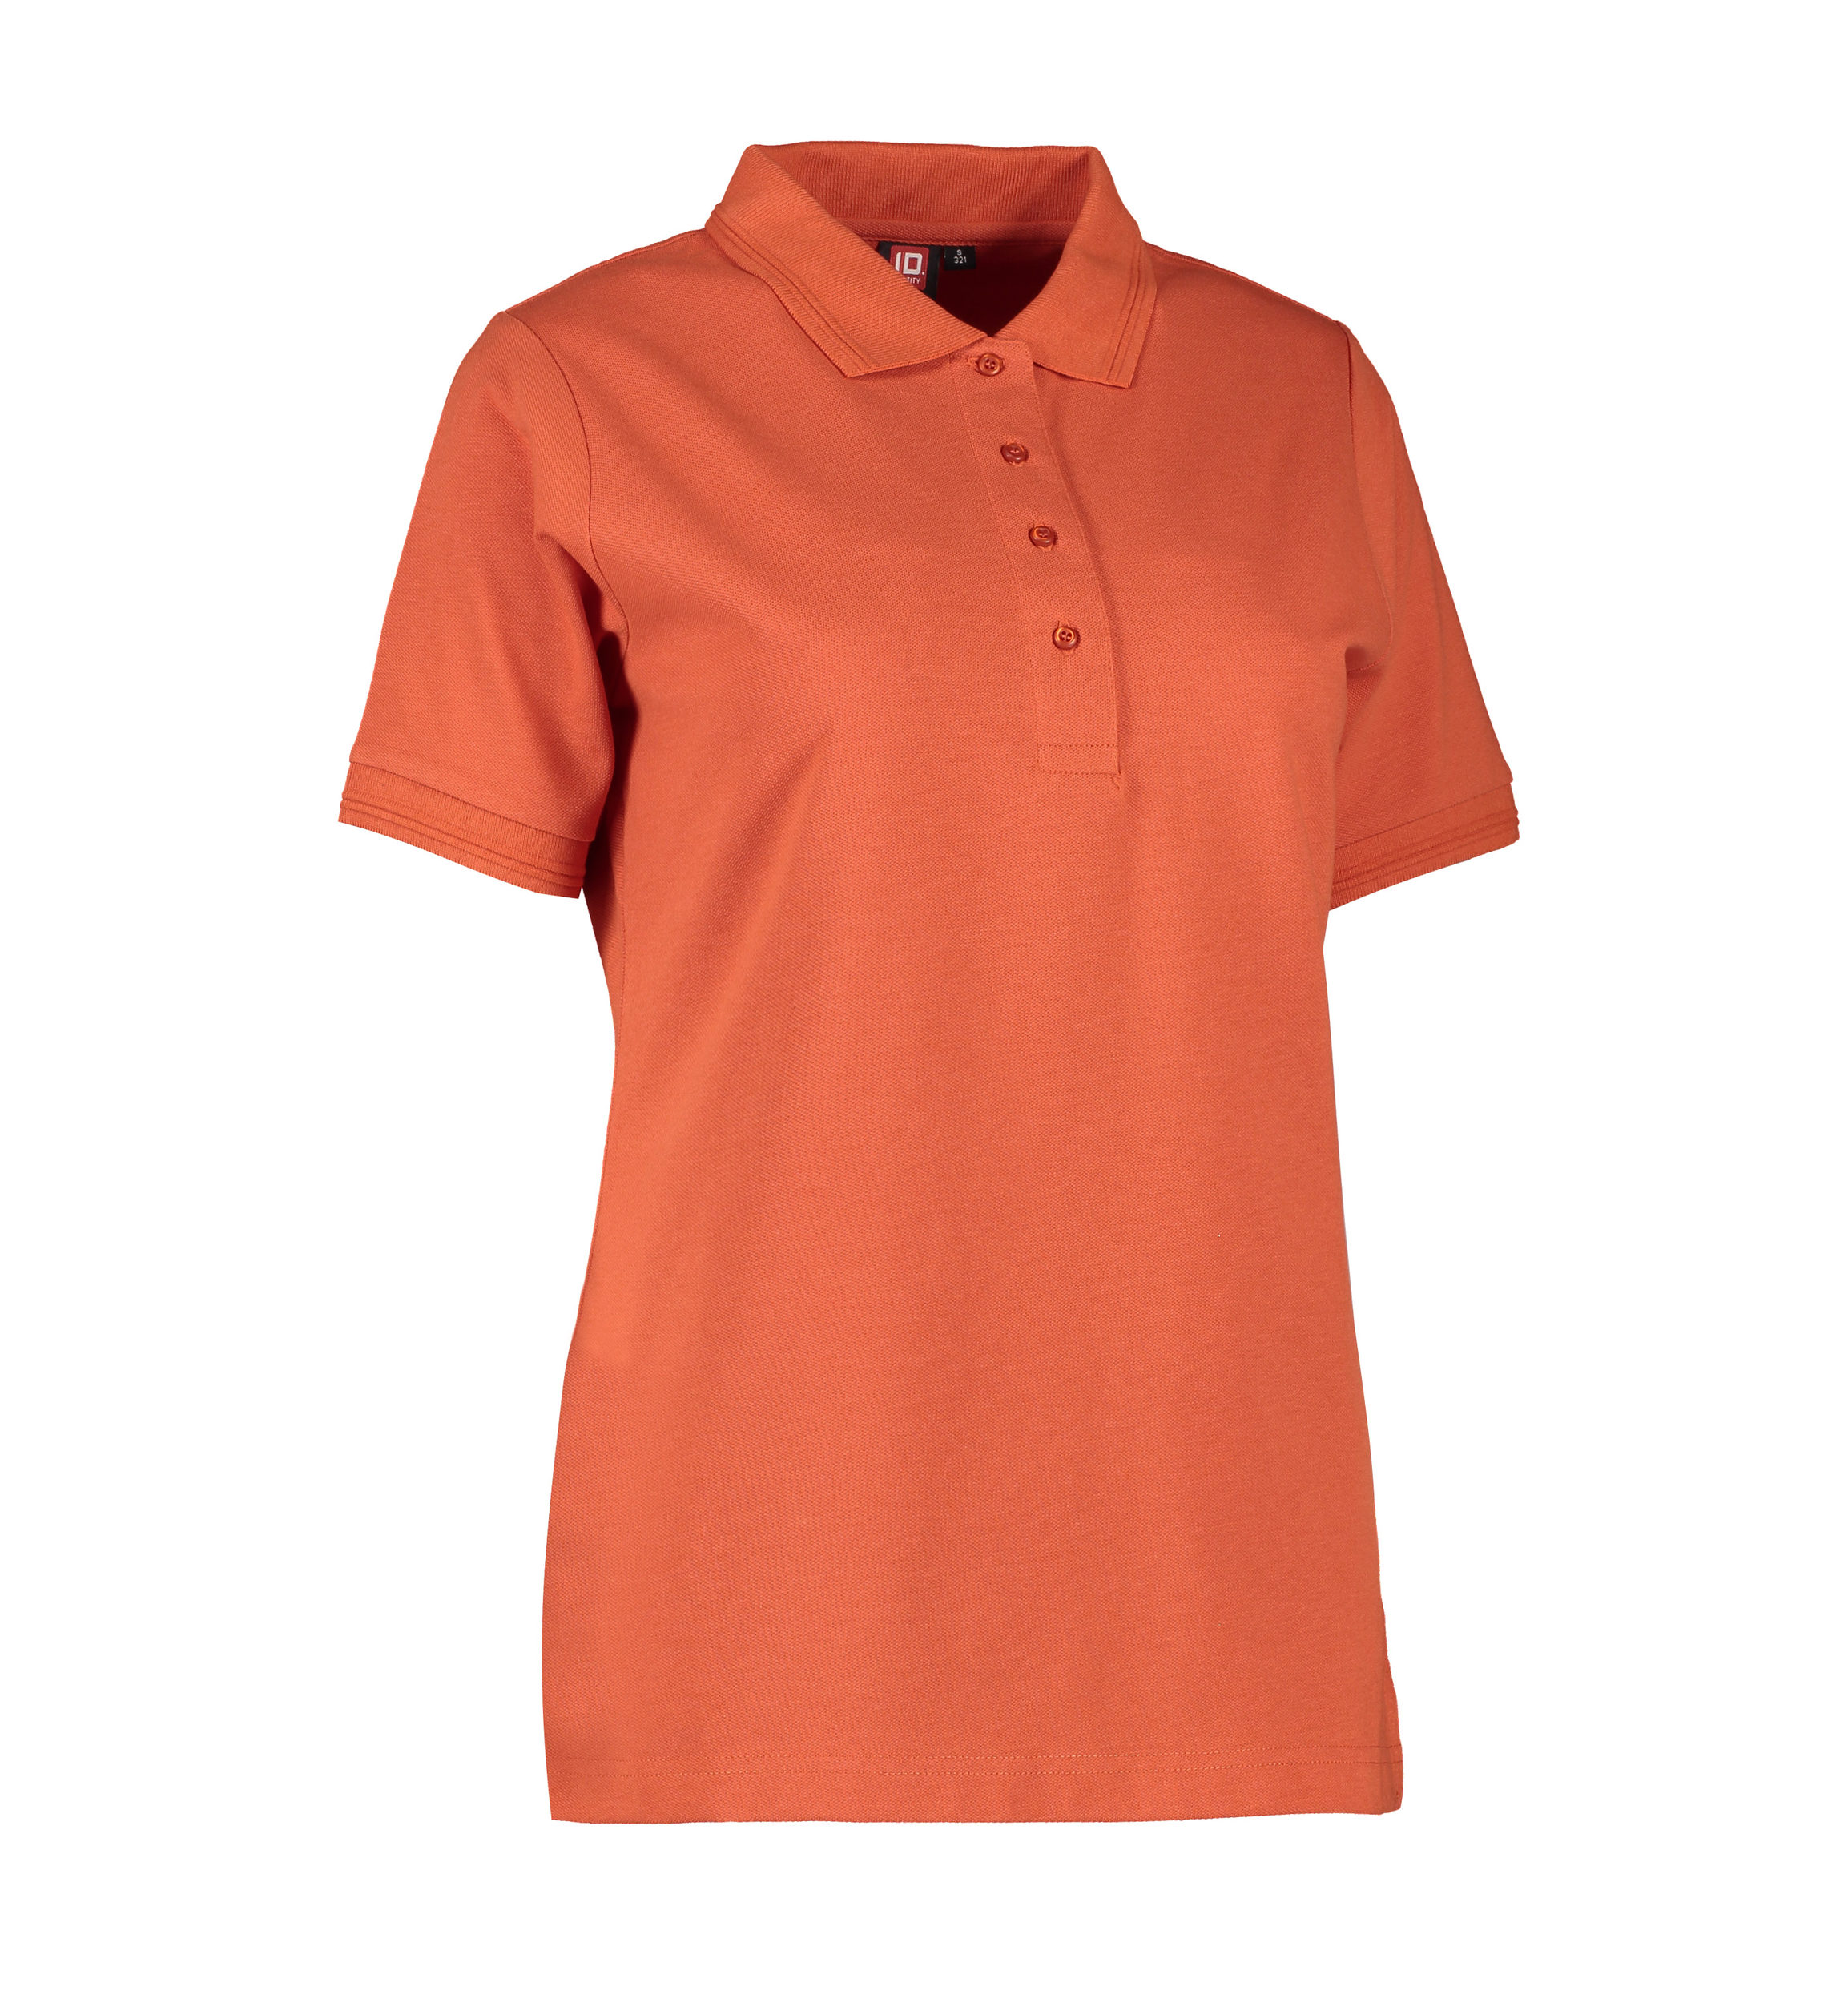 Billede af Koral farvet dame polo t-shirt i slidstærkt materiale - 4XL hos Sygeplejebutikken.dk